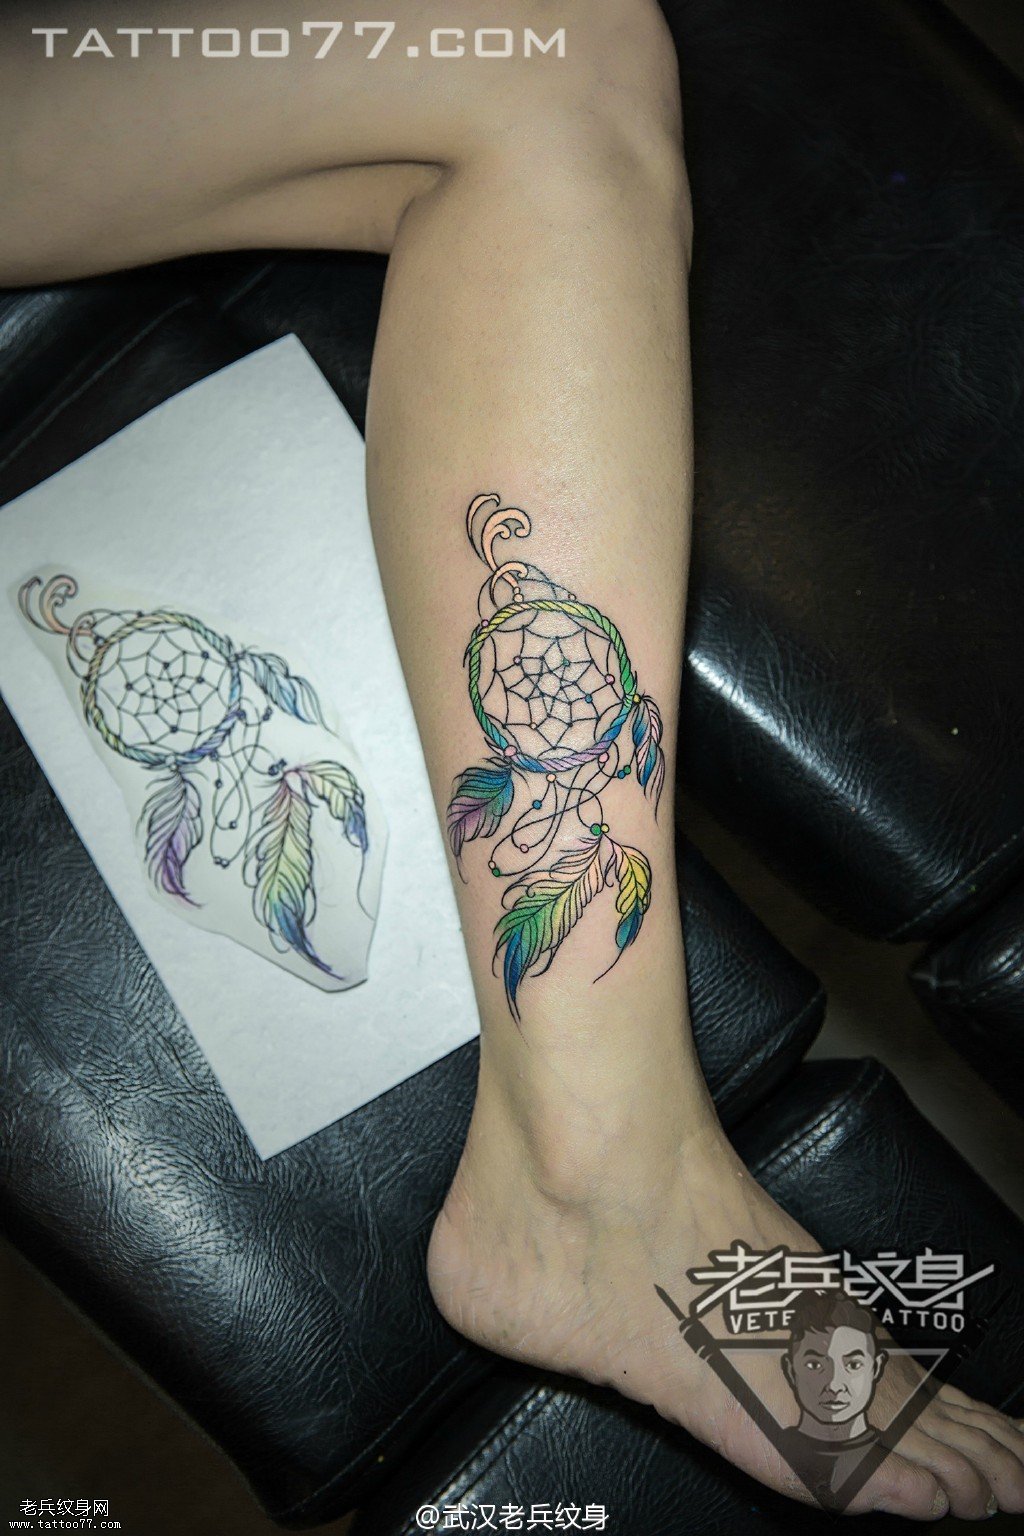 武汉女纹身师打造的小腿捕梦网纹身图案作品